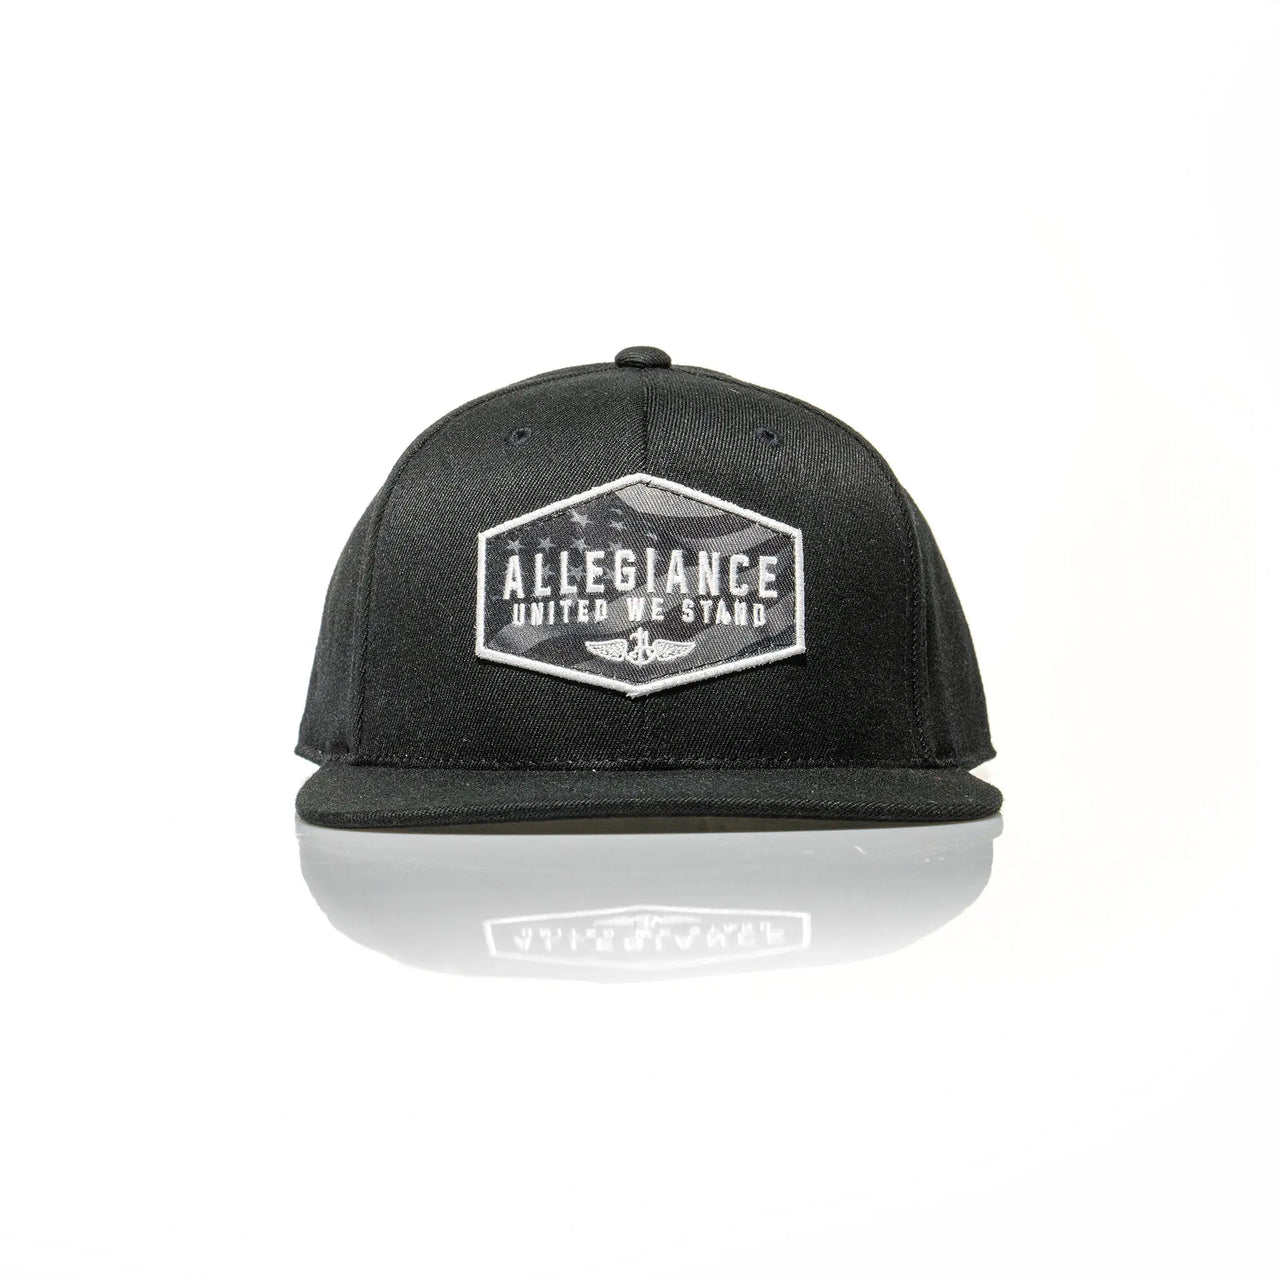 Flexfit 110 Hats - Allegiance Clothing